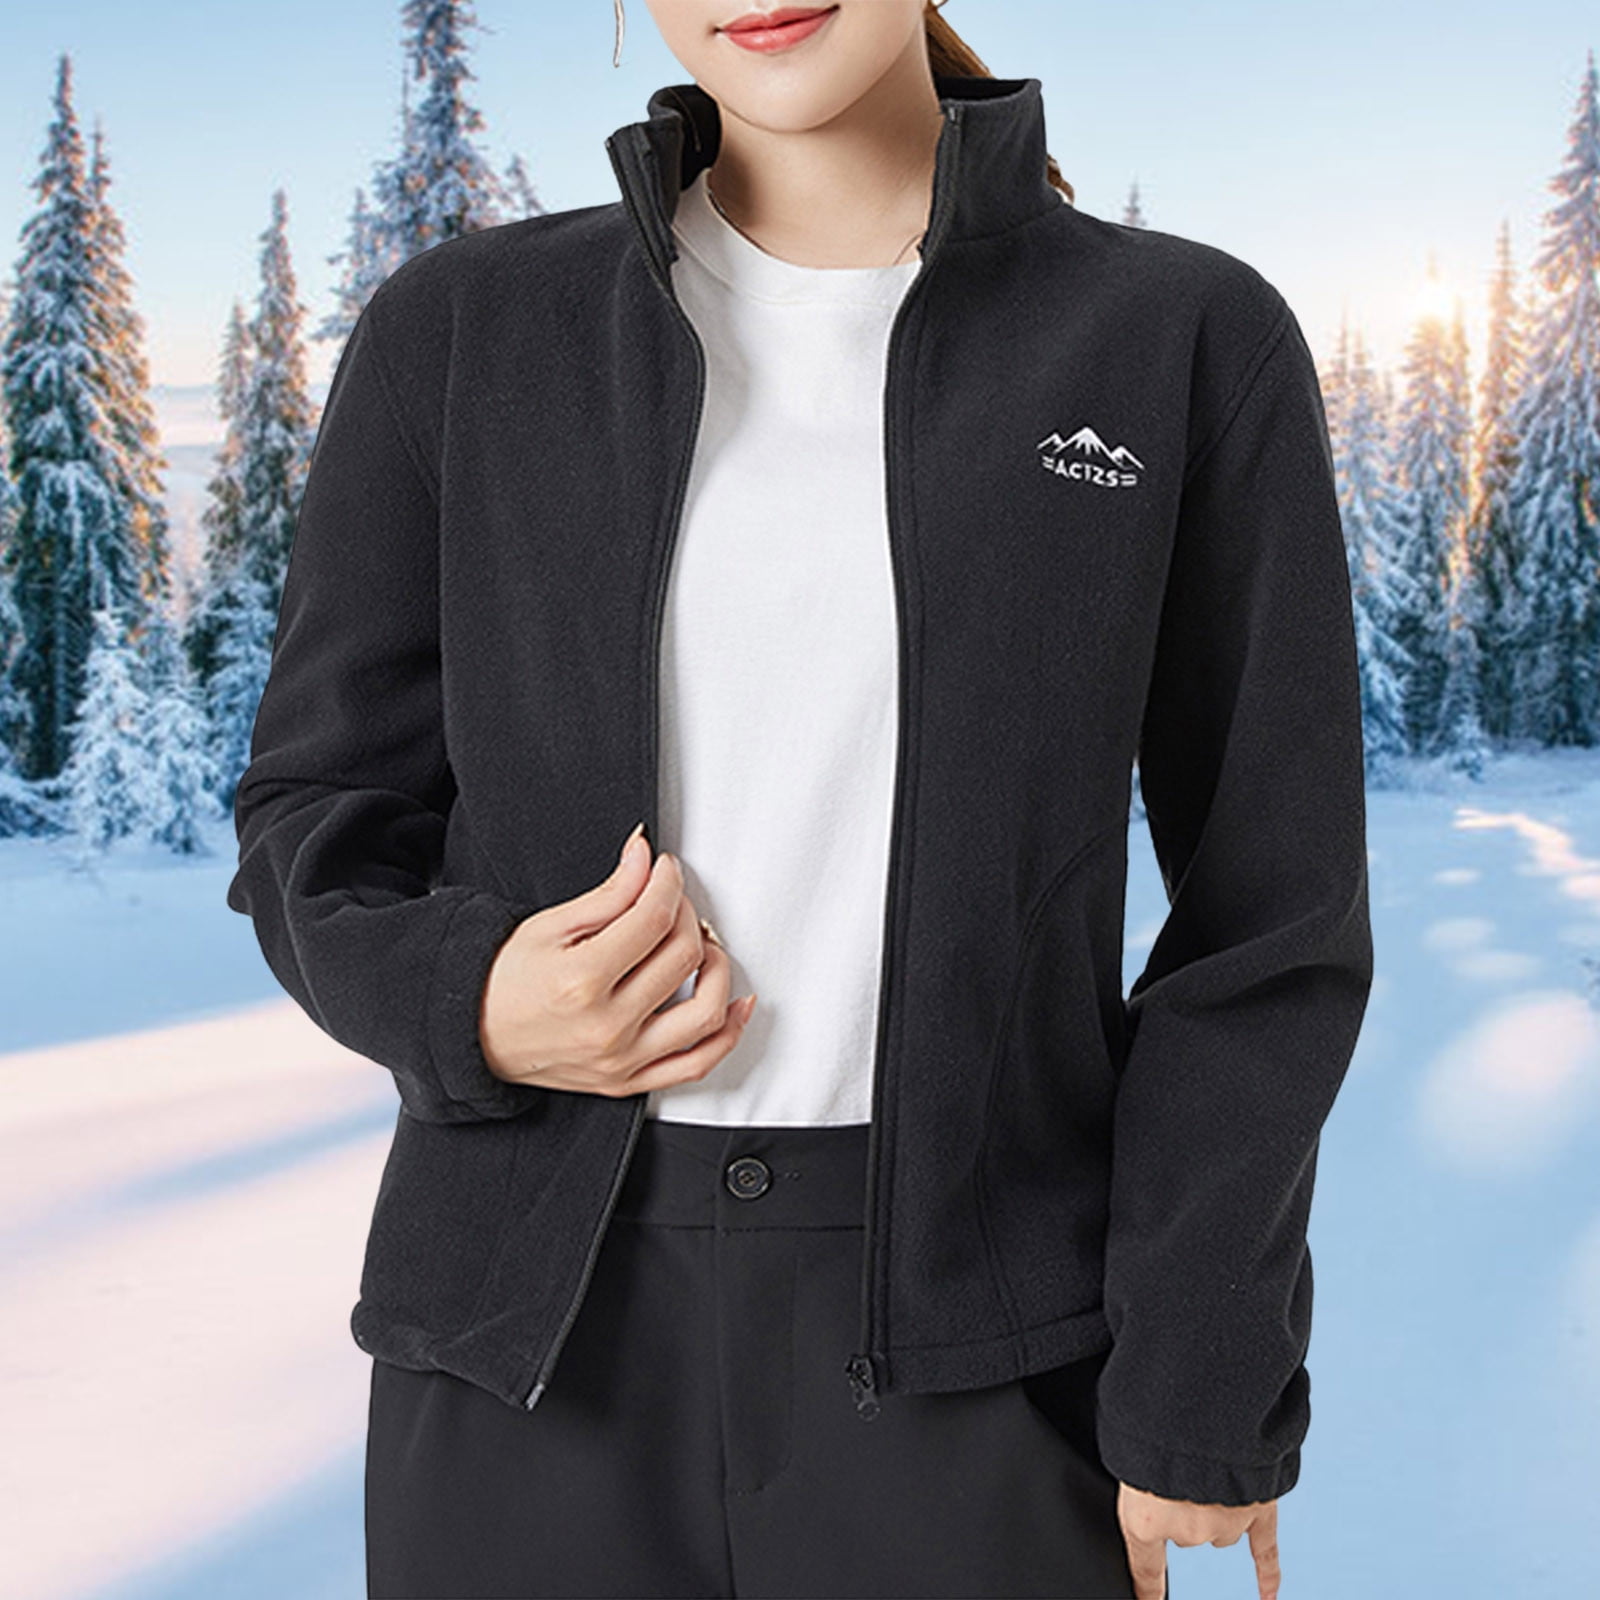 Onderzoek Wiskundige focus ONHUON Womens Jackets Winter Coat Worn On Both Sides Solid Color Stand  Collar Fleece Heating Coral Velvet Jackets Windproof And Warm Coat -  Walmart.com